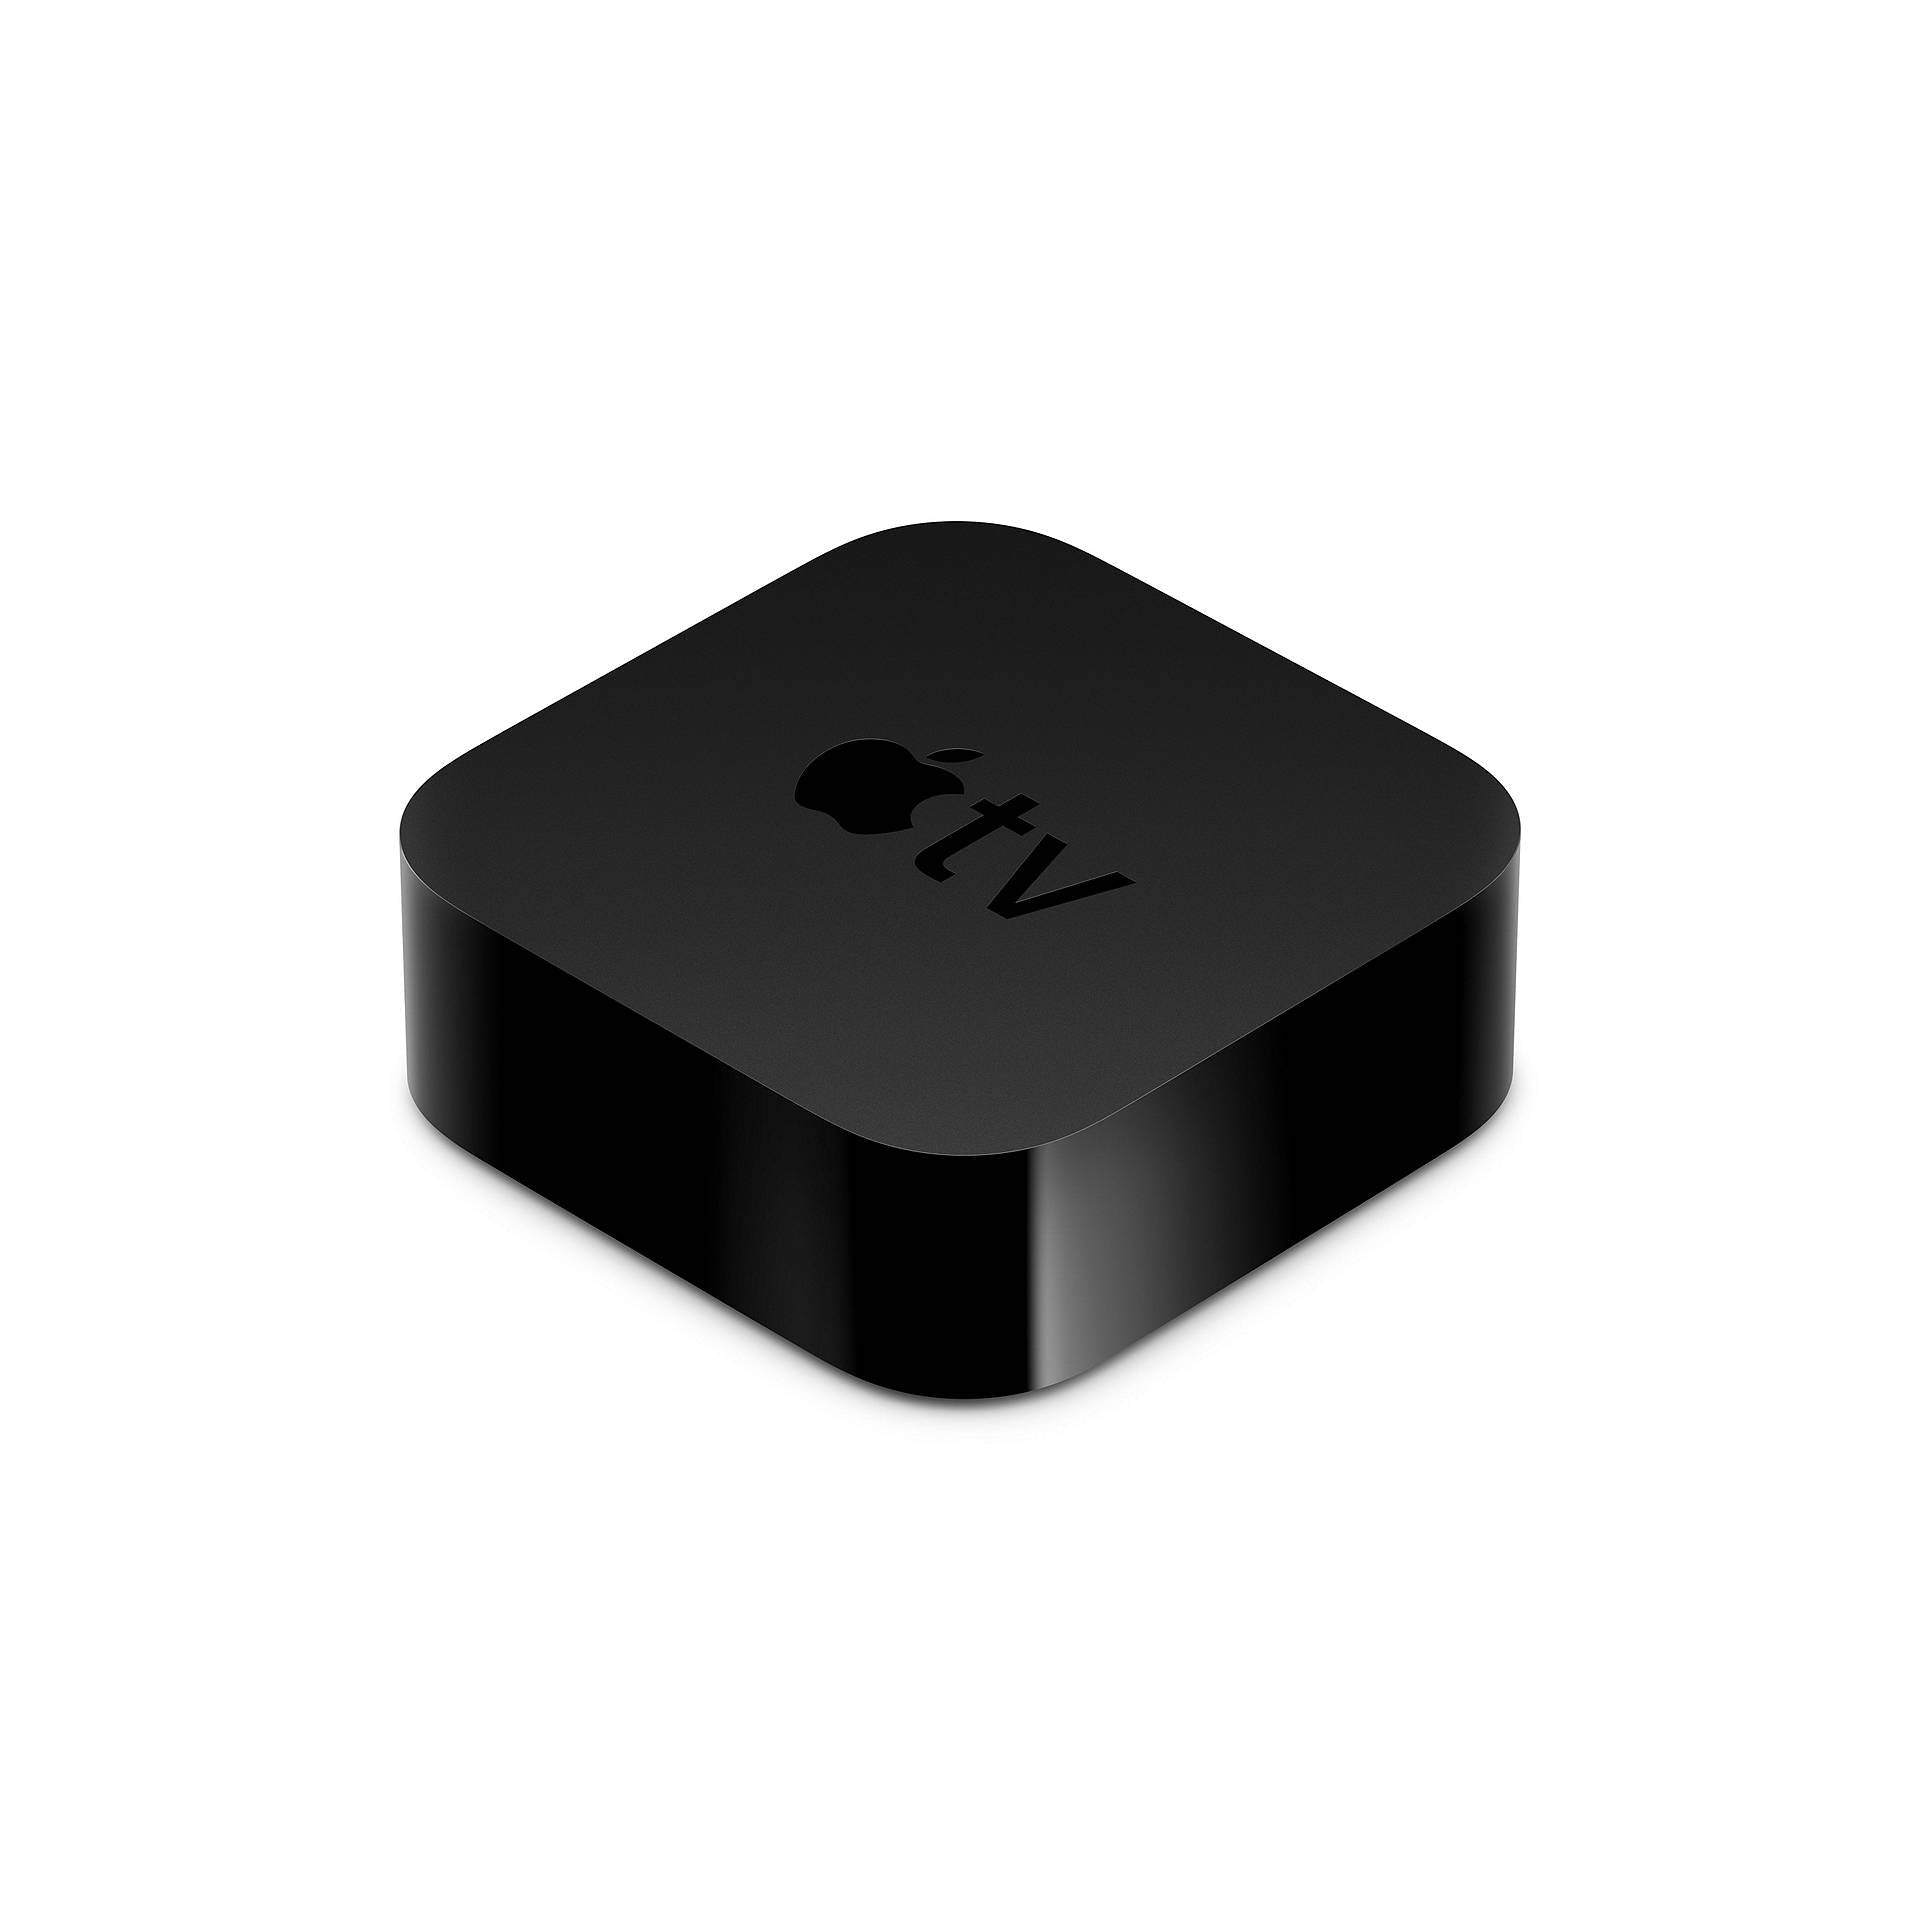 Apple TV HD 2021 32GB A1625 (MHY93B/A) - Black - Refurbished Good